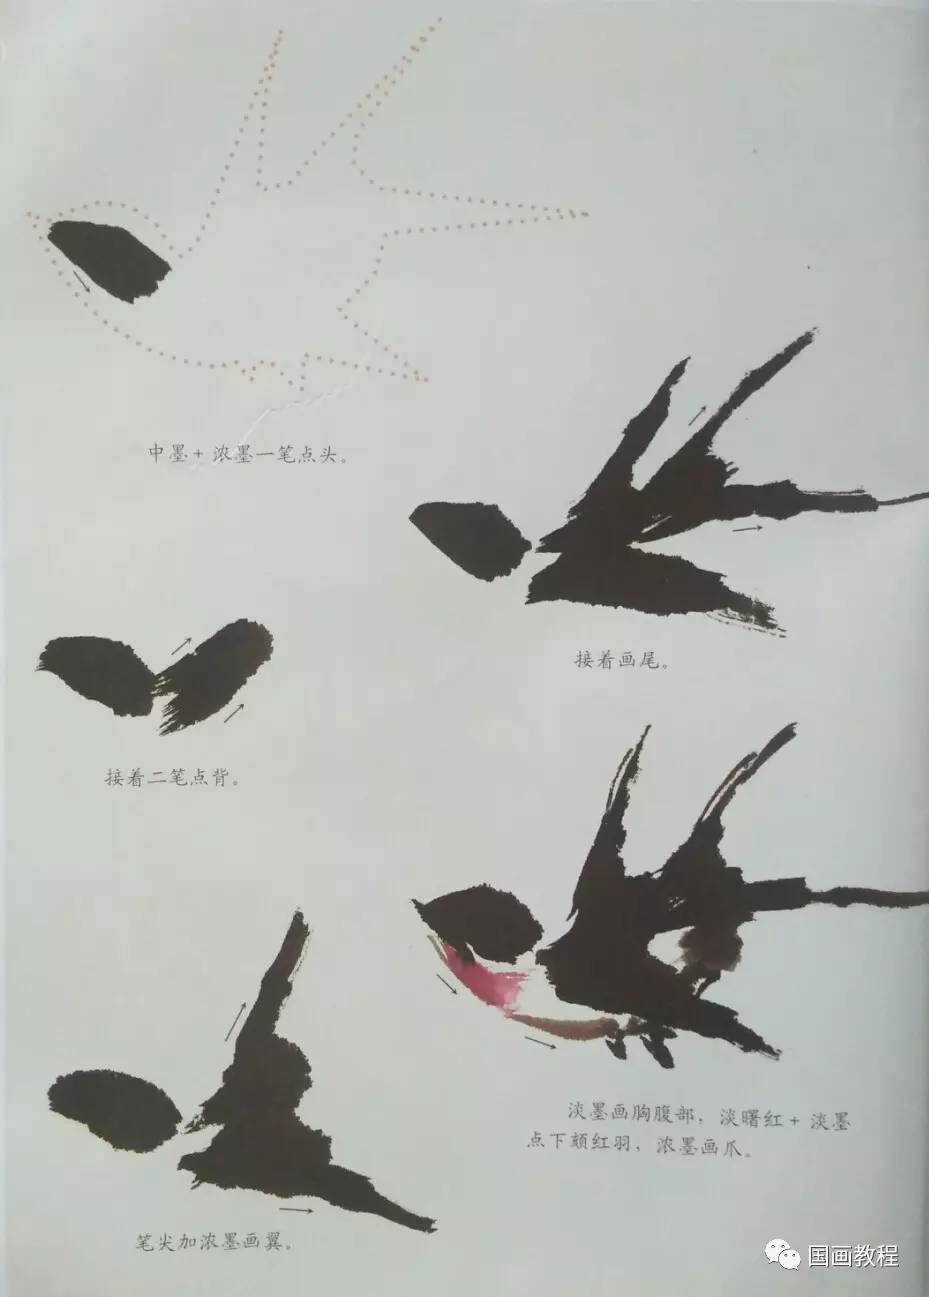 国画教程3集禽鸟的步骤画法